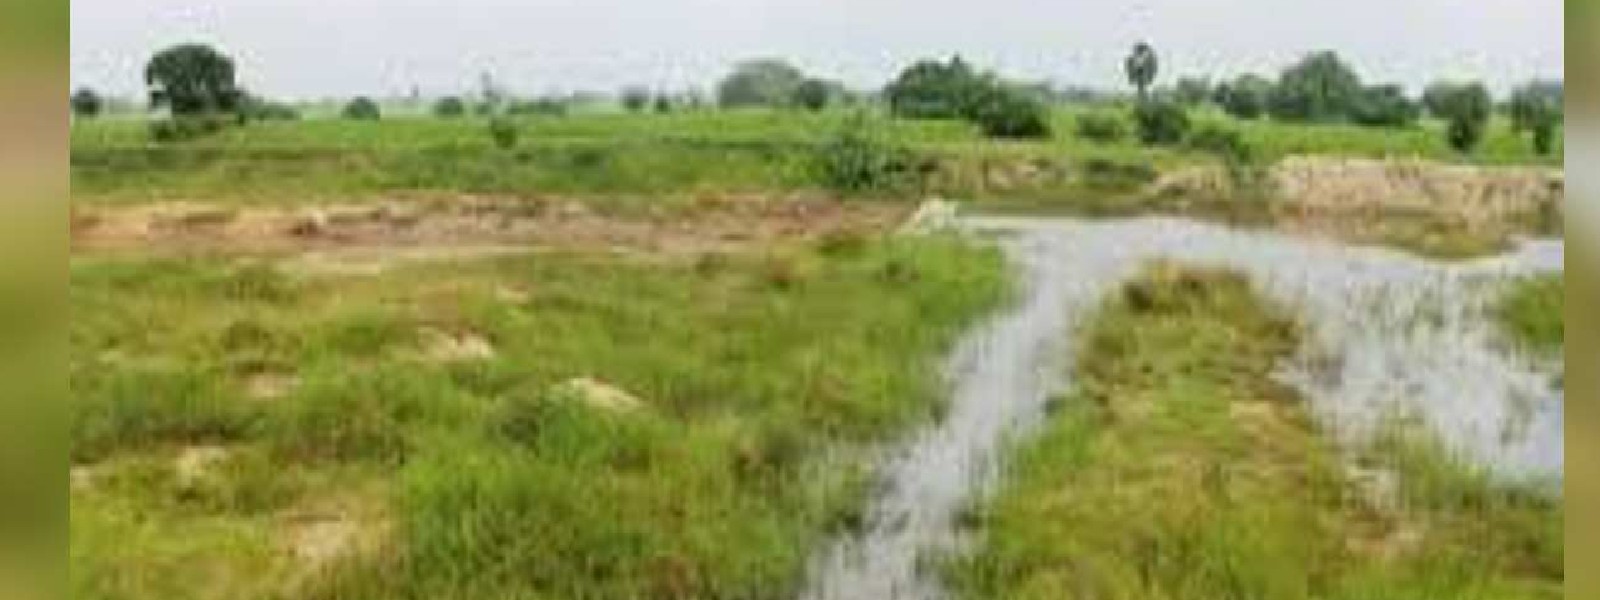 மேல் மாகாணத்தில் 80,000 ஏக்கர் தரிசு நிலங்கள்